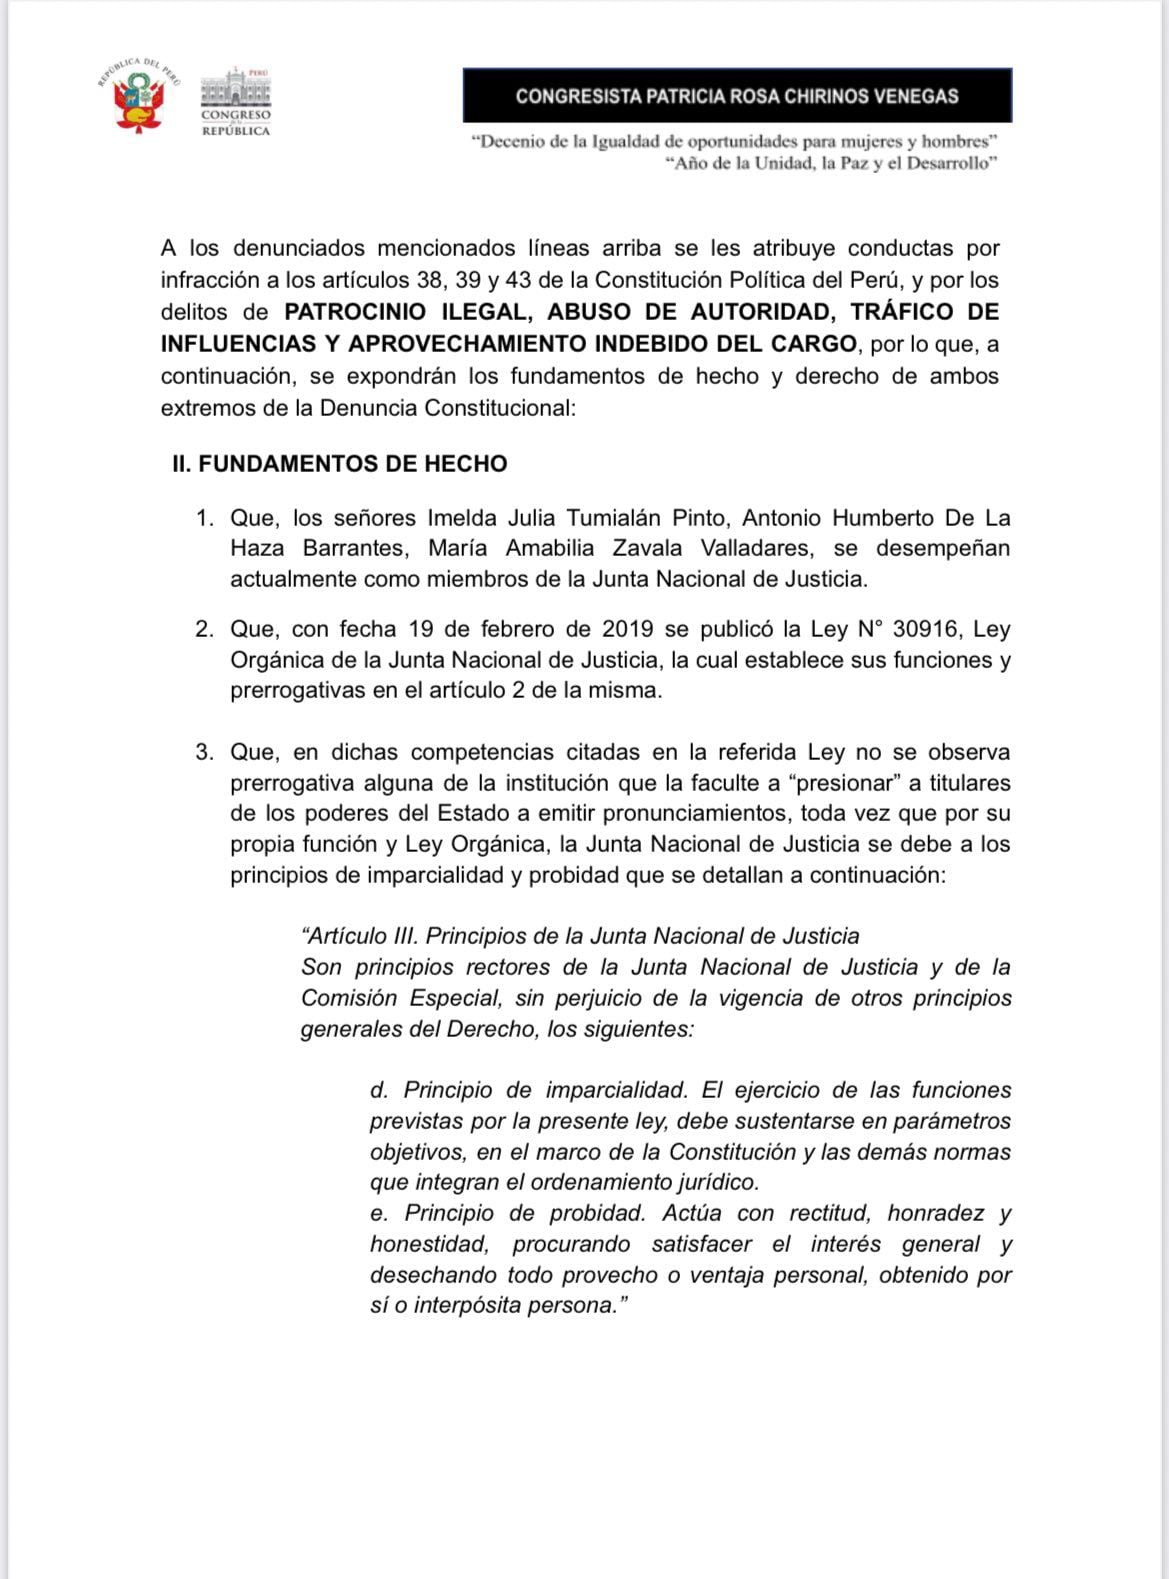 Denuncia constitucional de la congresista Patricia Chirinos (Avanza País) contra tres integrantes de la Junta Nacional de Justicia. 